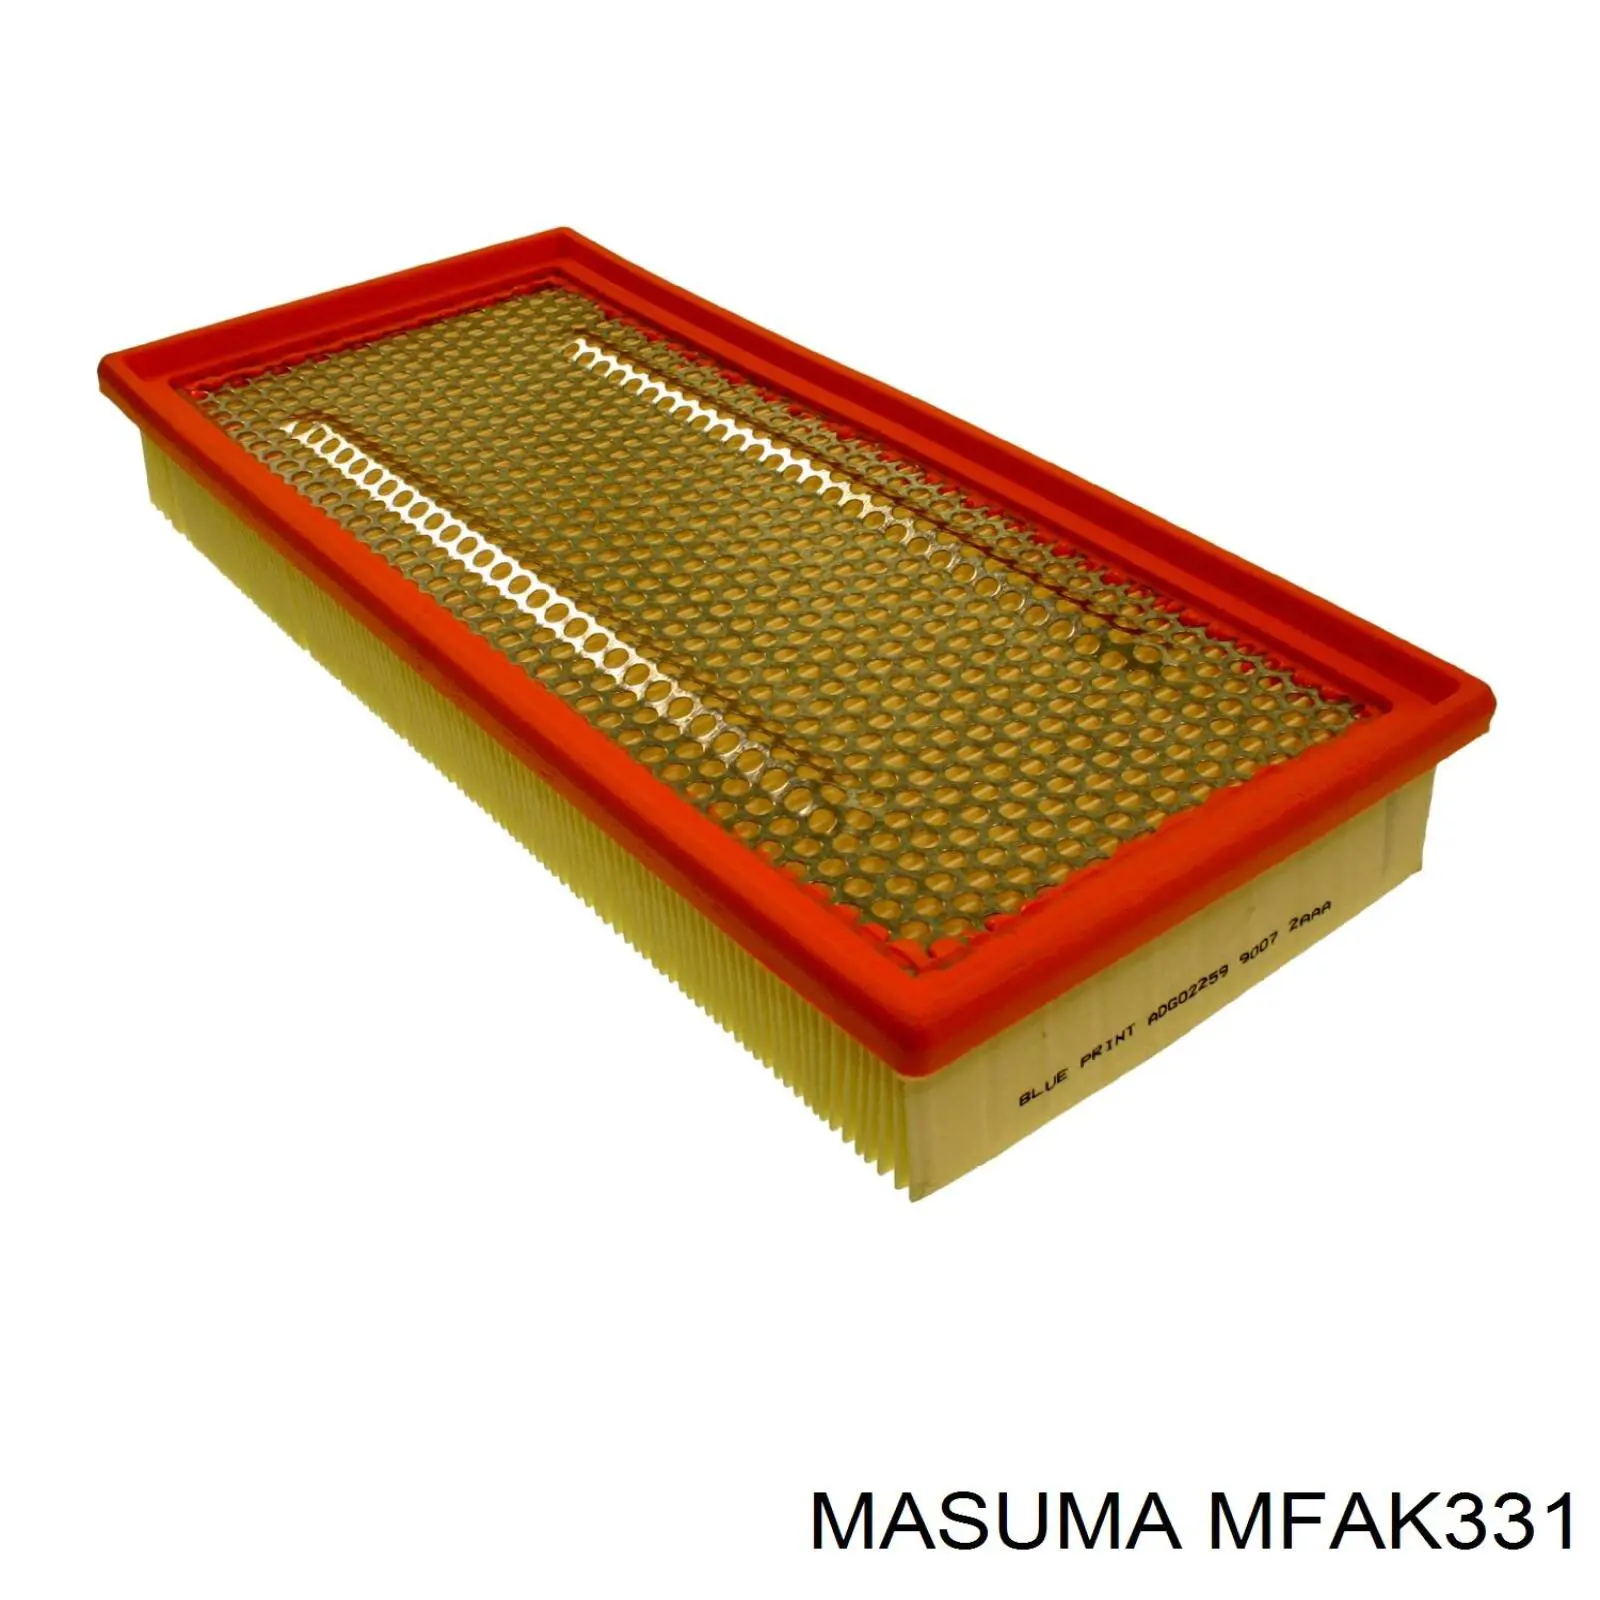 MFAK331 Masuma воздушный фильтр